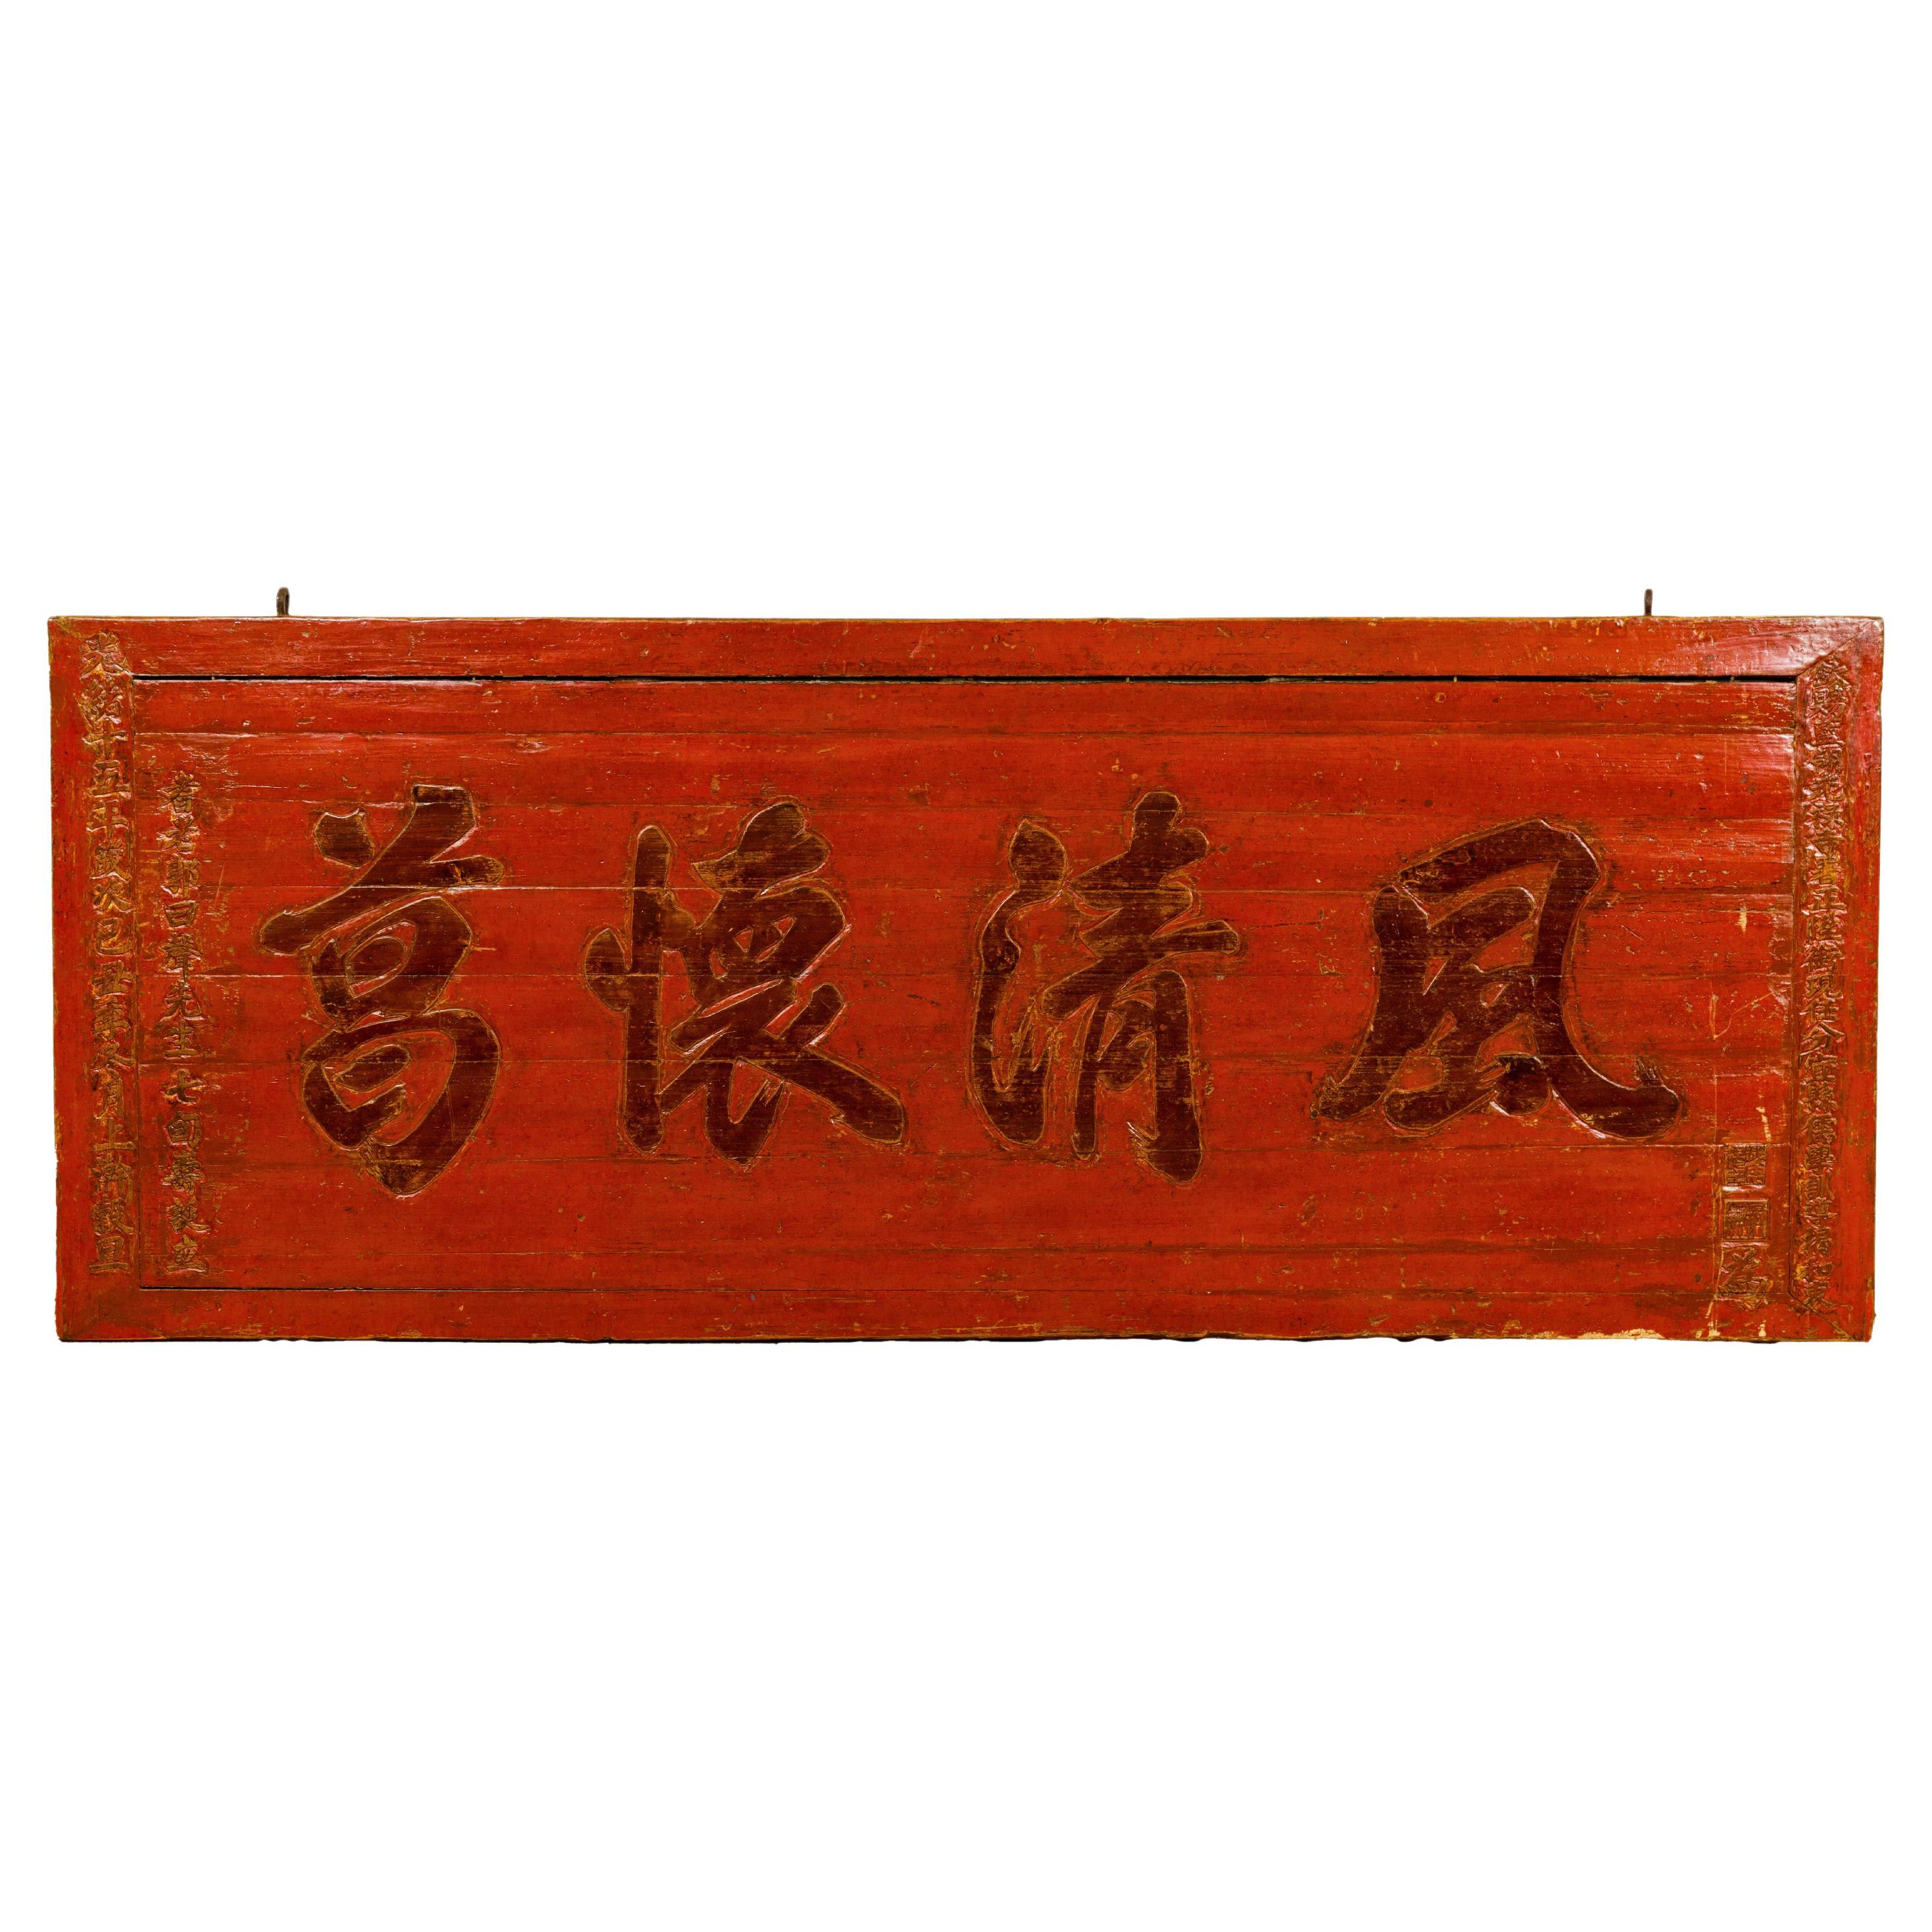 Enseigne de magasin chinoise en laque rouge, calligraphiée, de la période de la Dynastie Qing